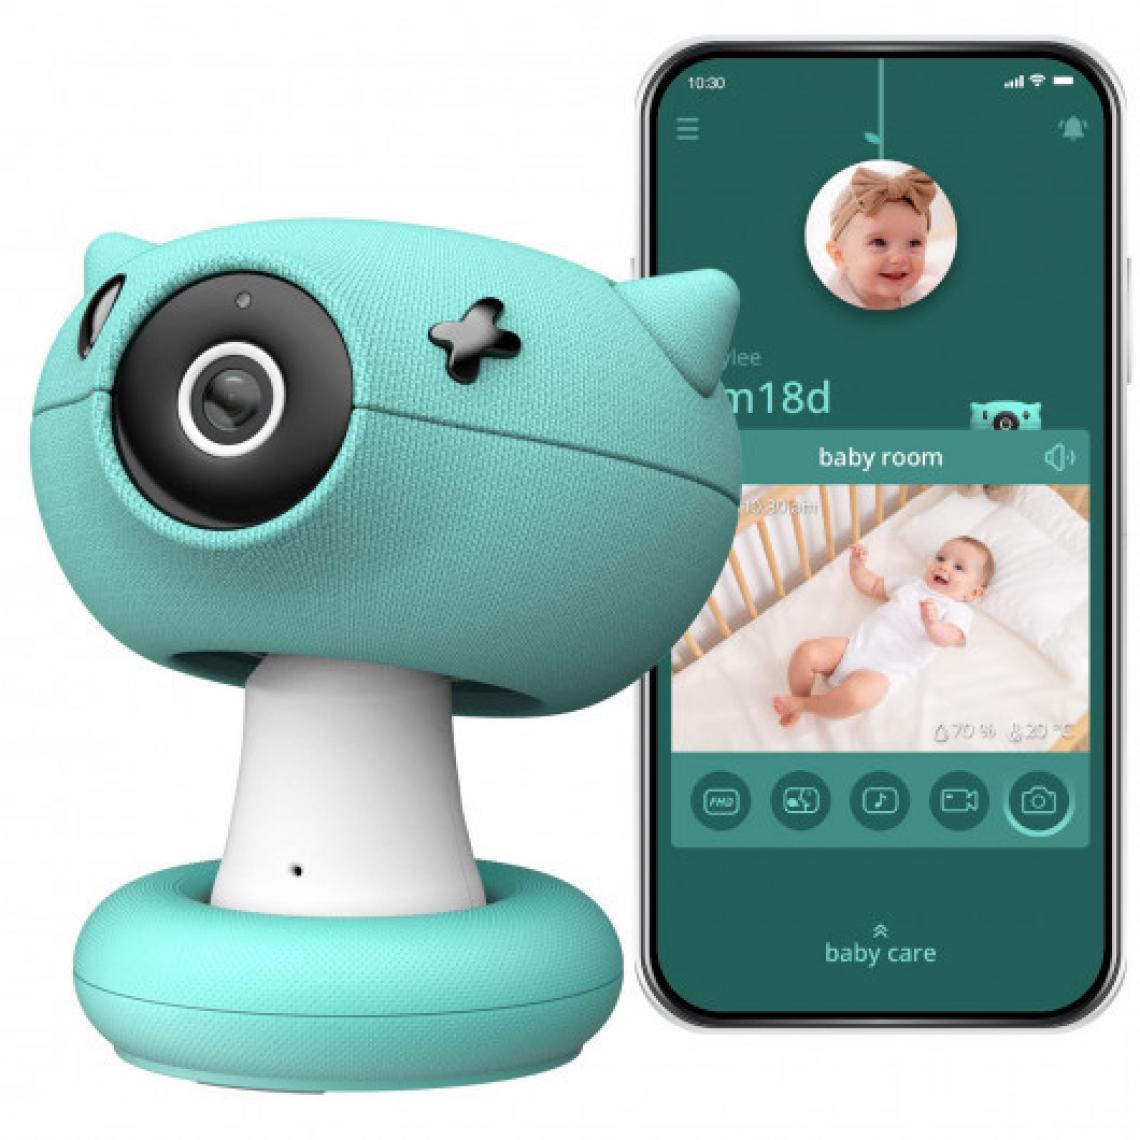 Ofs Selection - Pixsee 500073415, Le moniteur intelligent pour bébé - Babyphone connecté